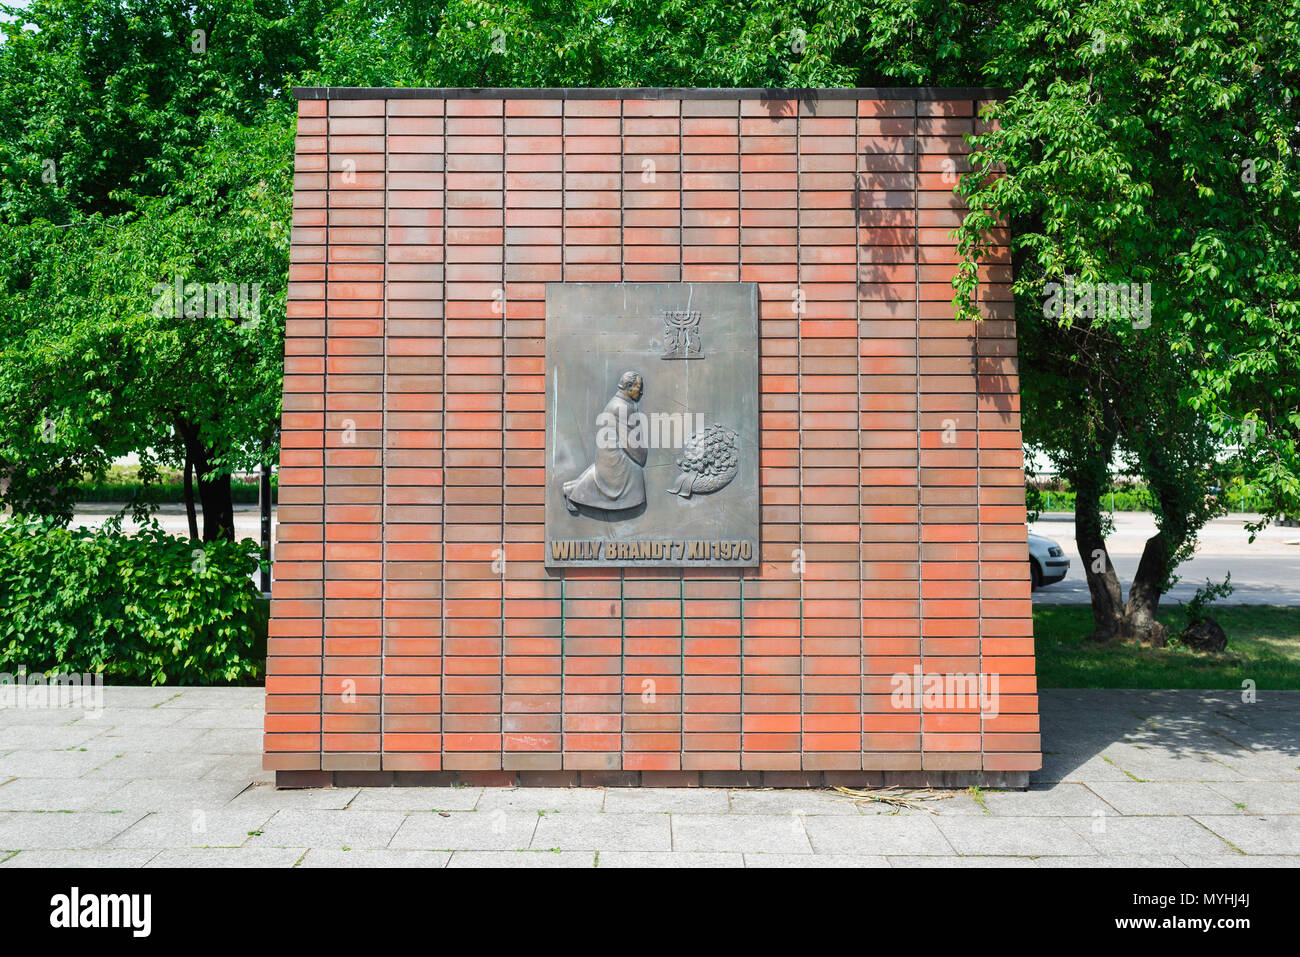 La Willy Brandt (Kniefall) monumento nel trimestre Muranow di Varsavia segna l'atto di contrizione effettuata nel 1970 dall'ex cancelliere tedesco. Foto Stock